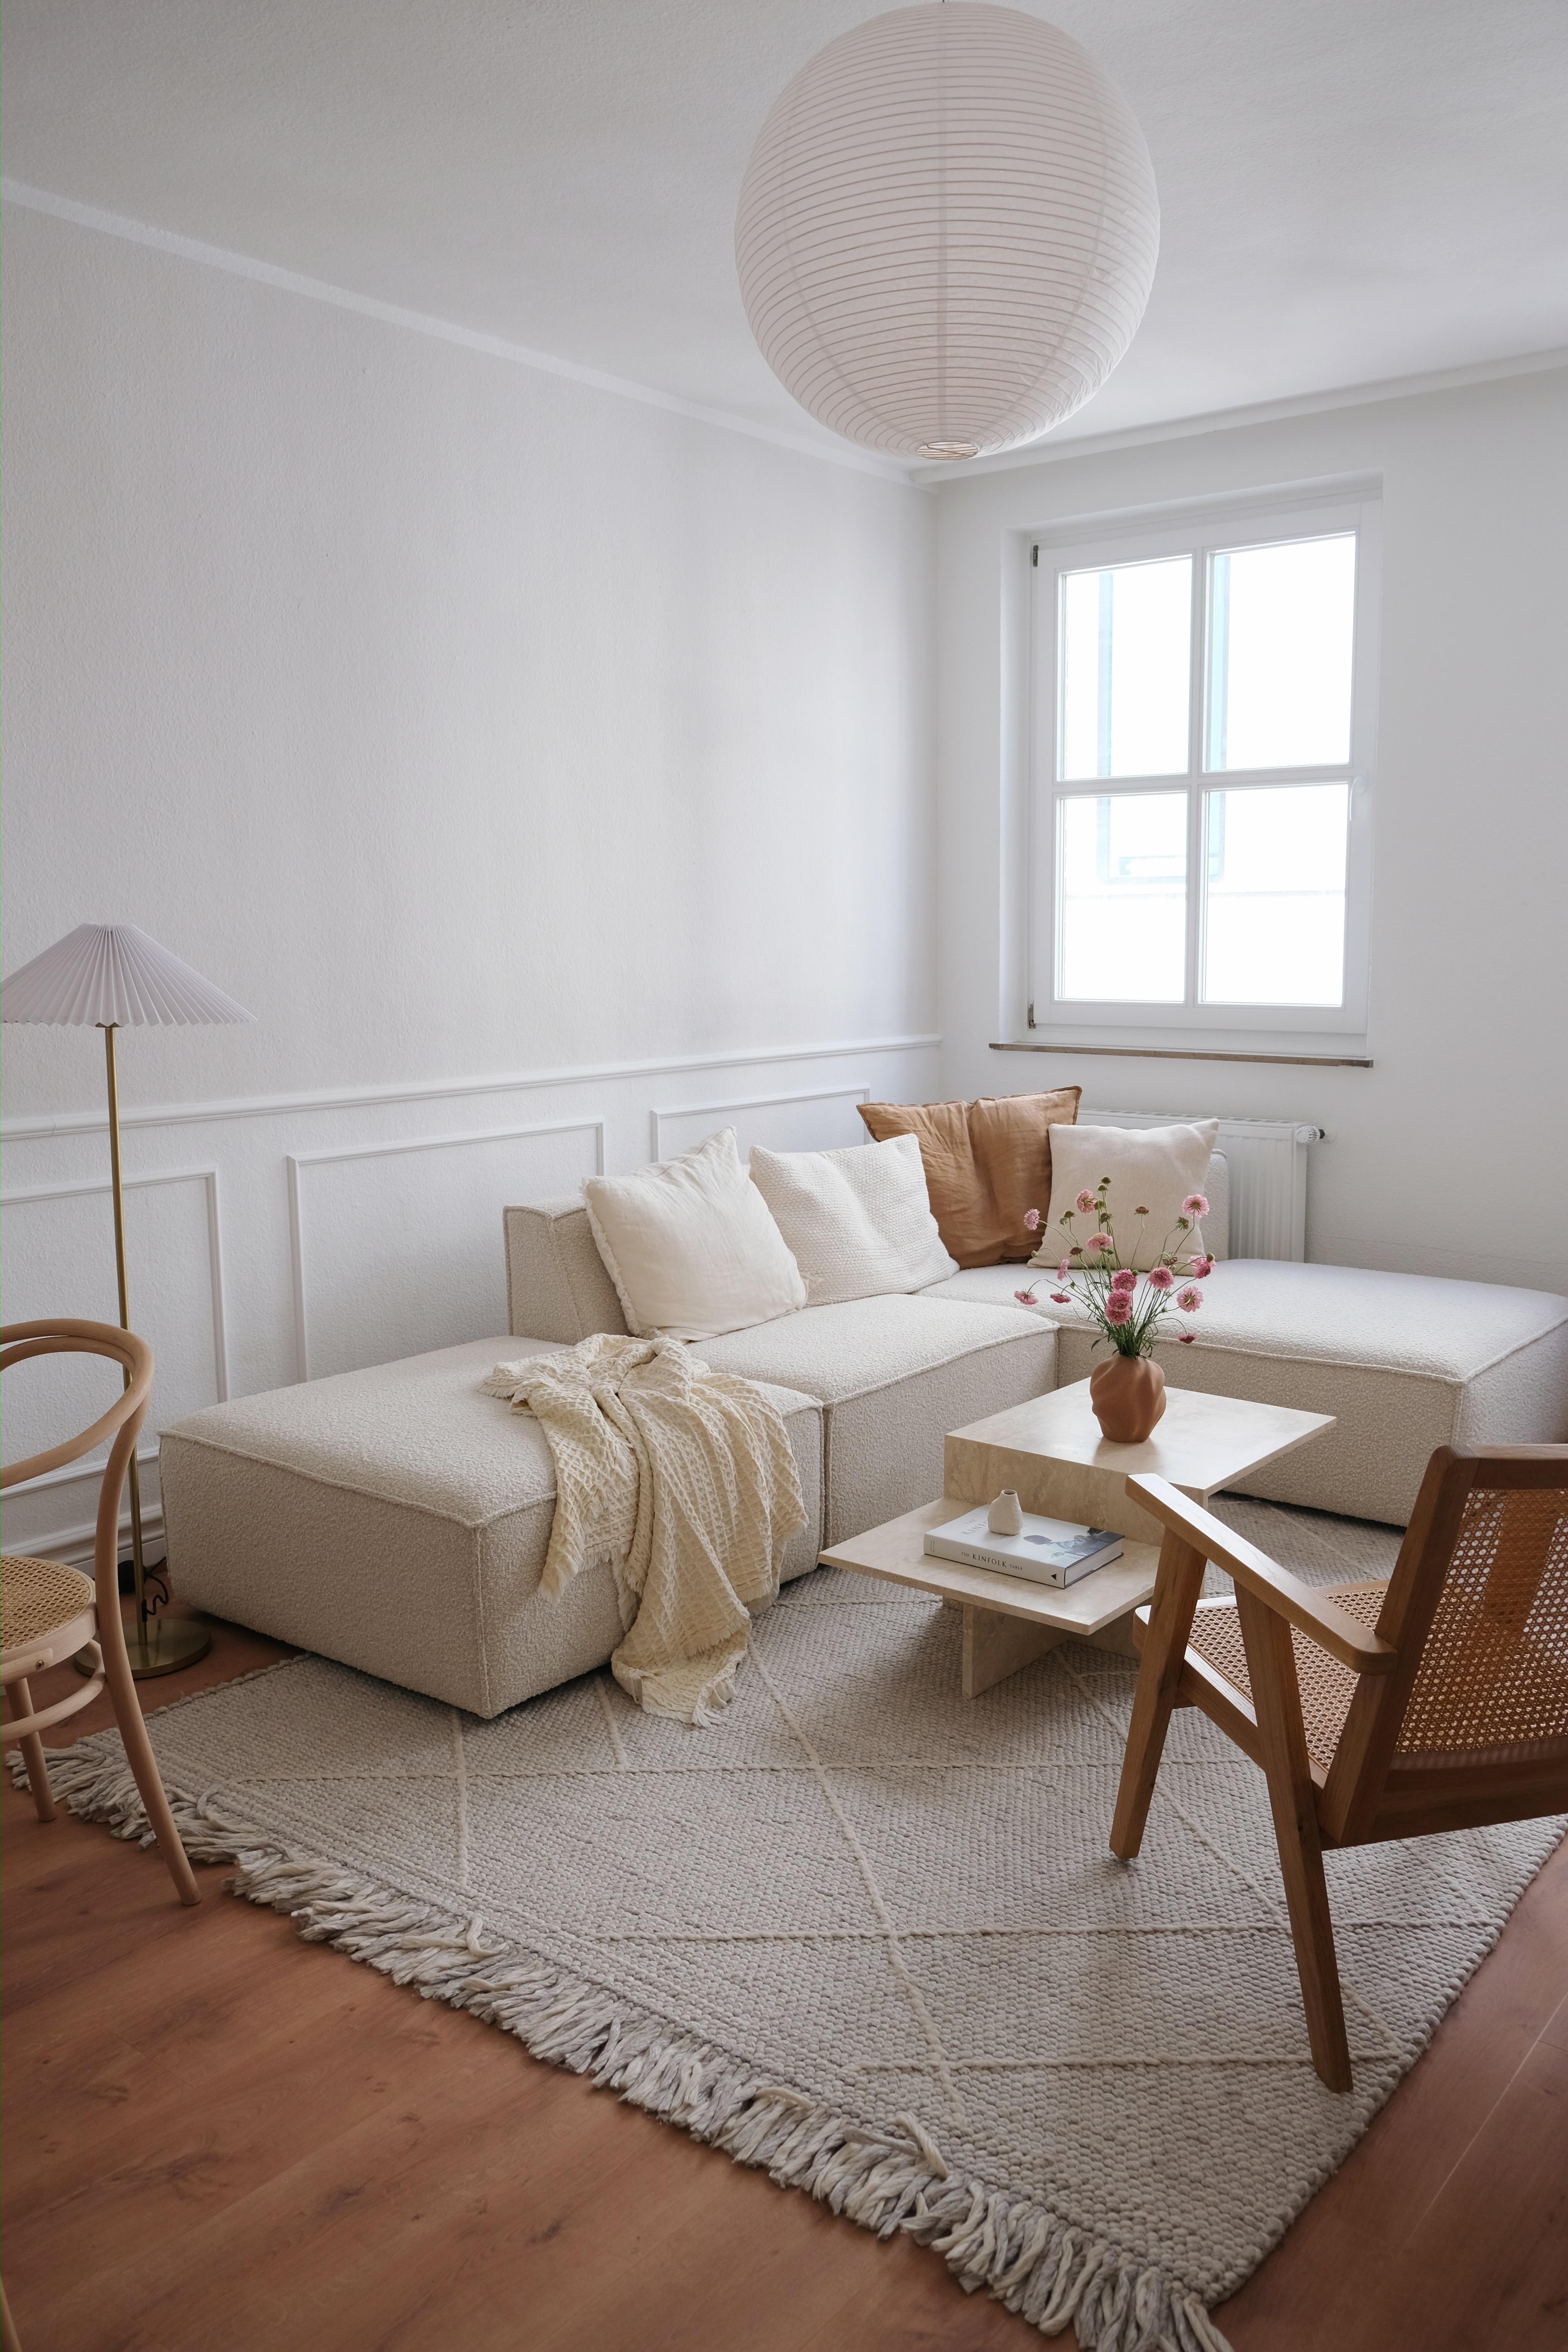 #wohnzimmer #einrichtung #whiteliving #altbauliebe #interior 